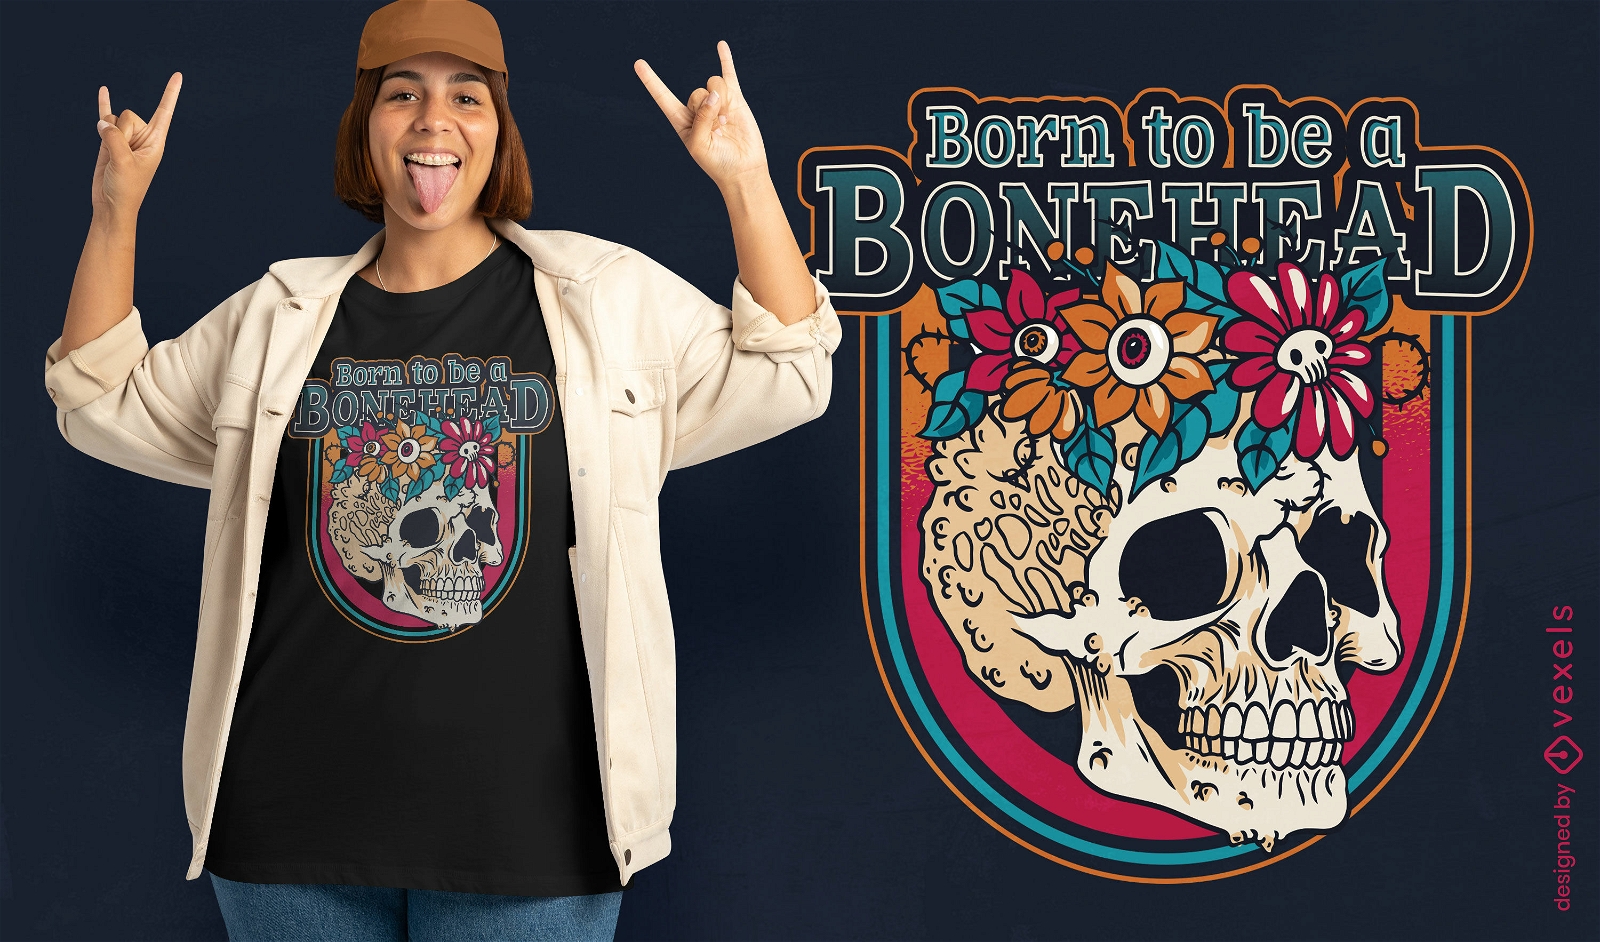 Born to be a bonehead t-shirt design